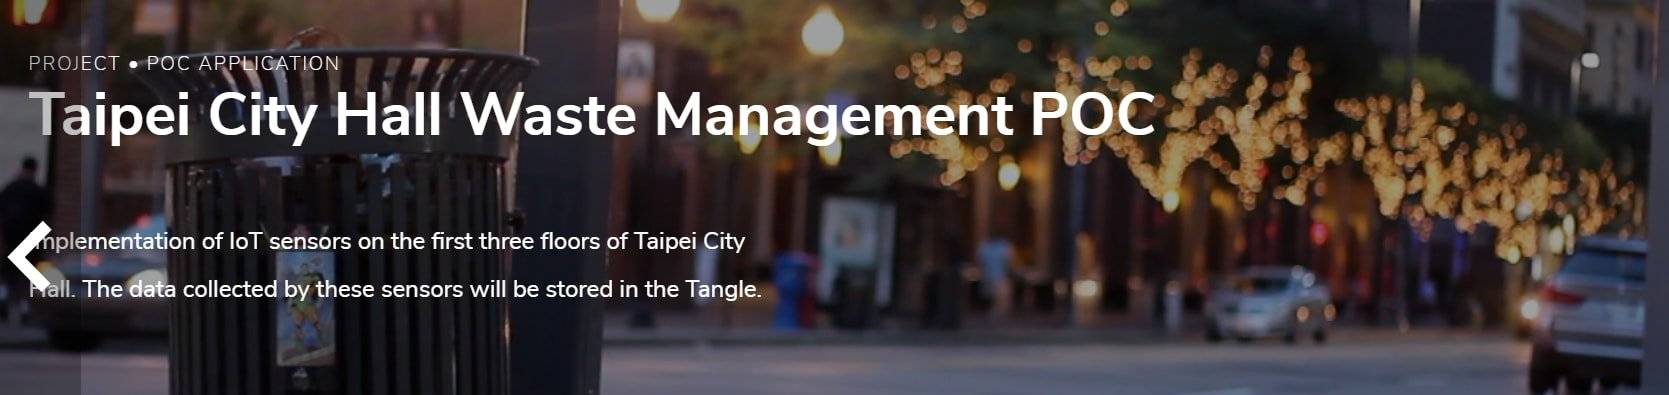 Associació IOTA amb POC de gestió de residus de l'Ajuntament de Taipei